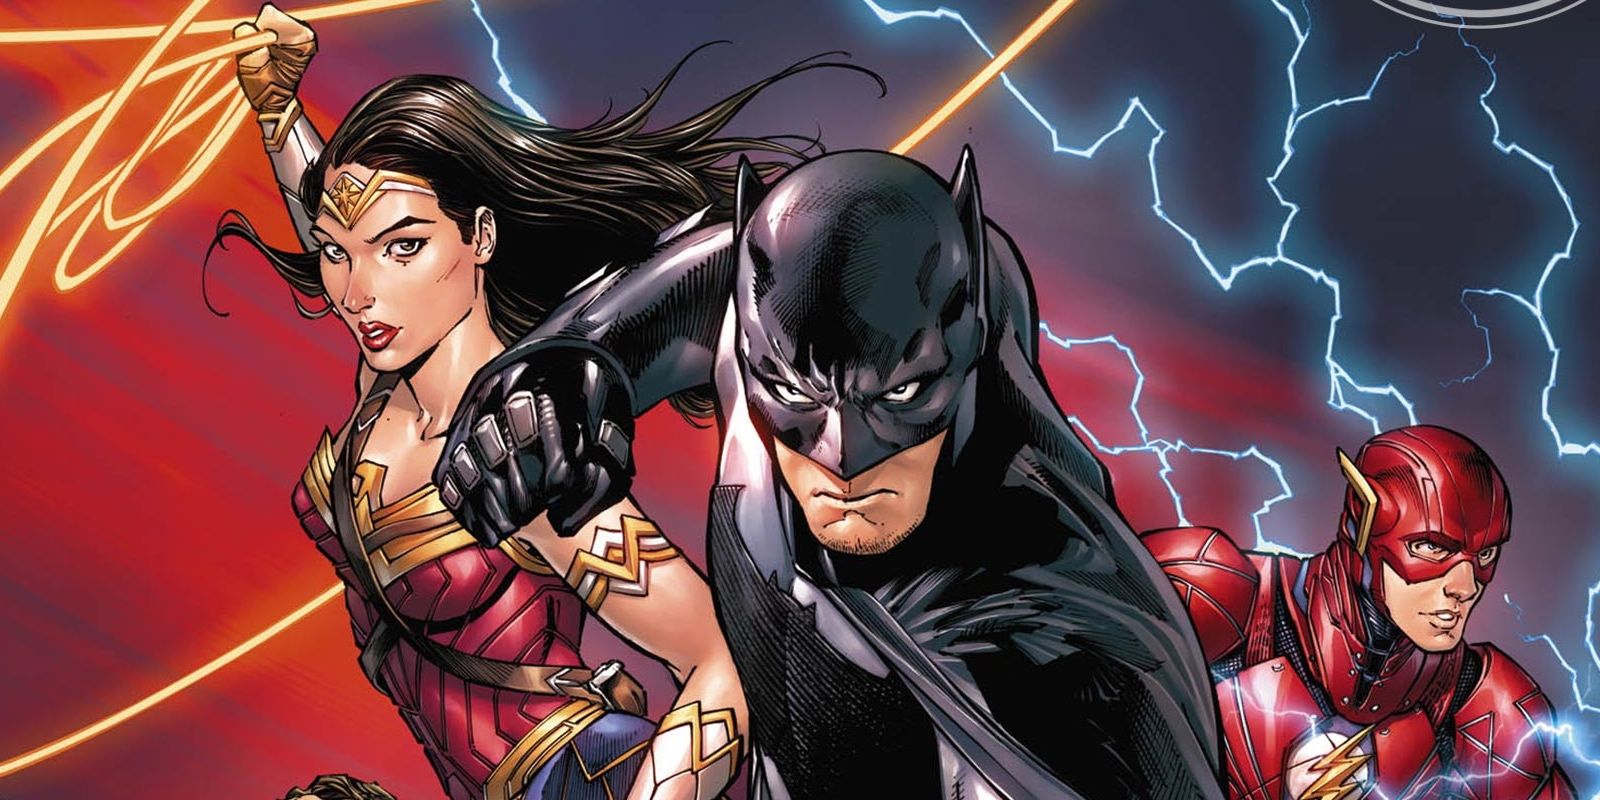 Batman#34 Justice League takes over DC comics CR: DC Comics